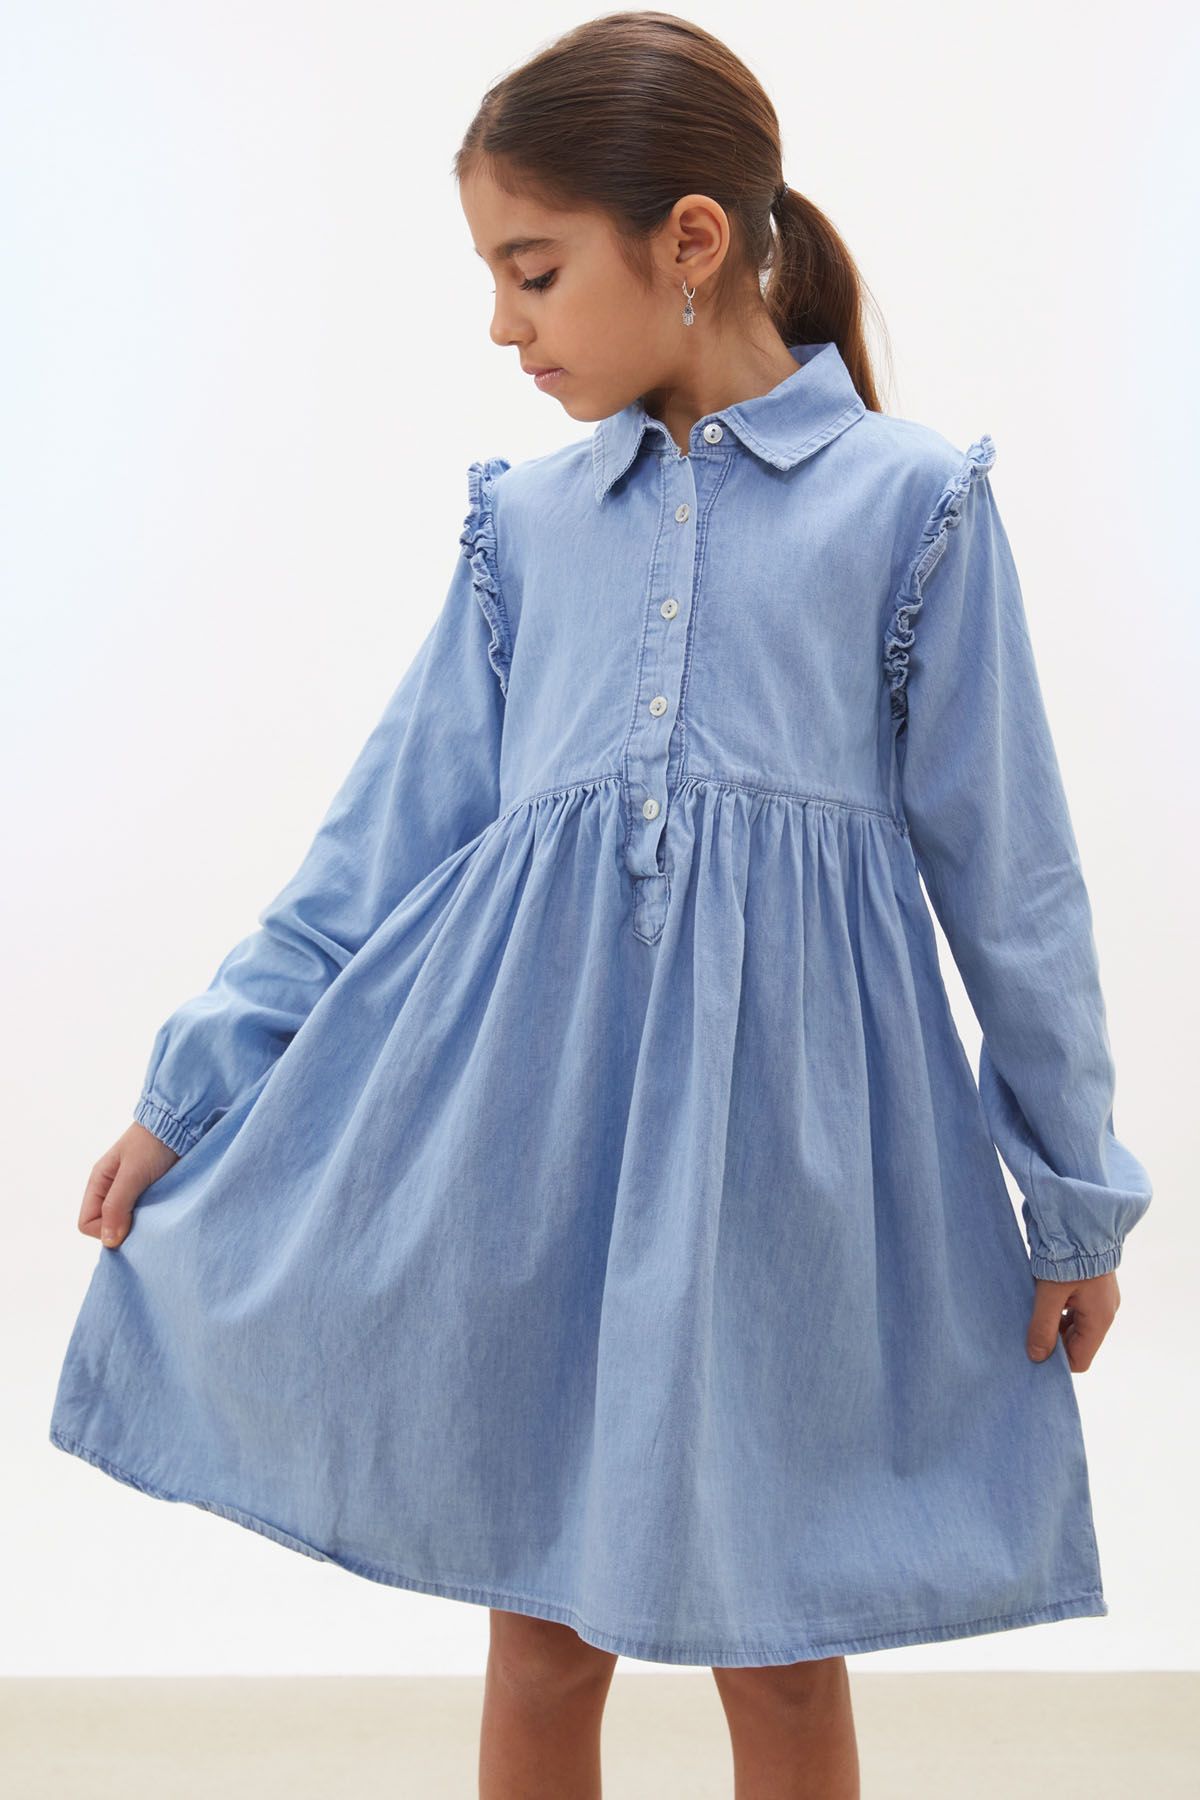 Cansın Mini Mavi Kolu Fırfırlı Düğmeli Kız Çocuk Uzun Kollu Jean Elbise 17932